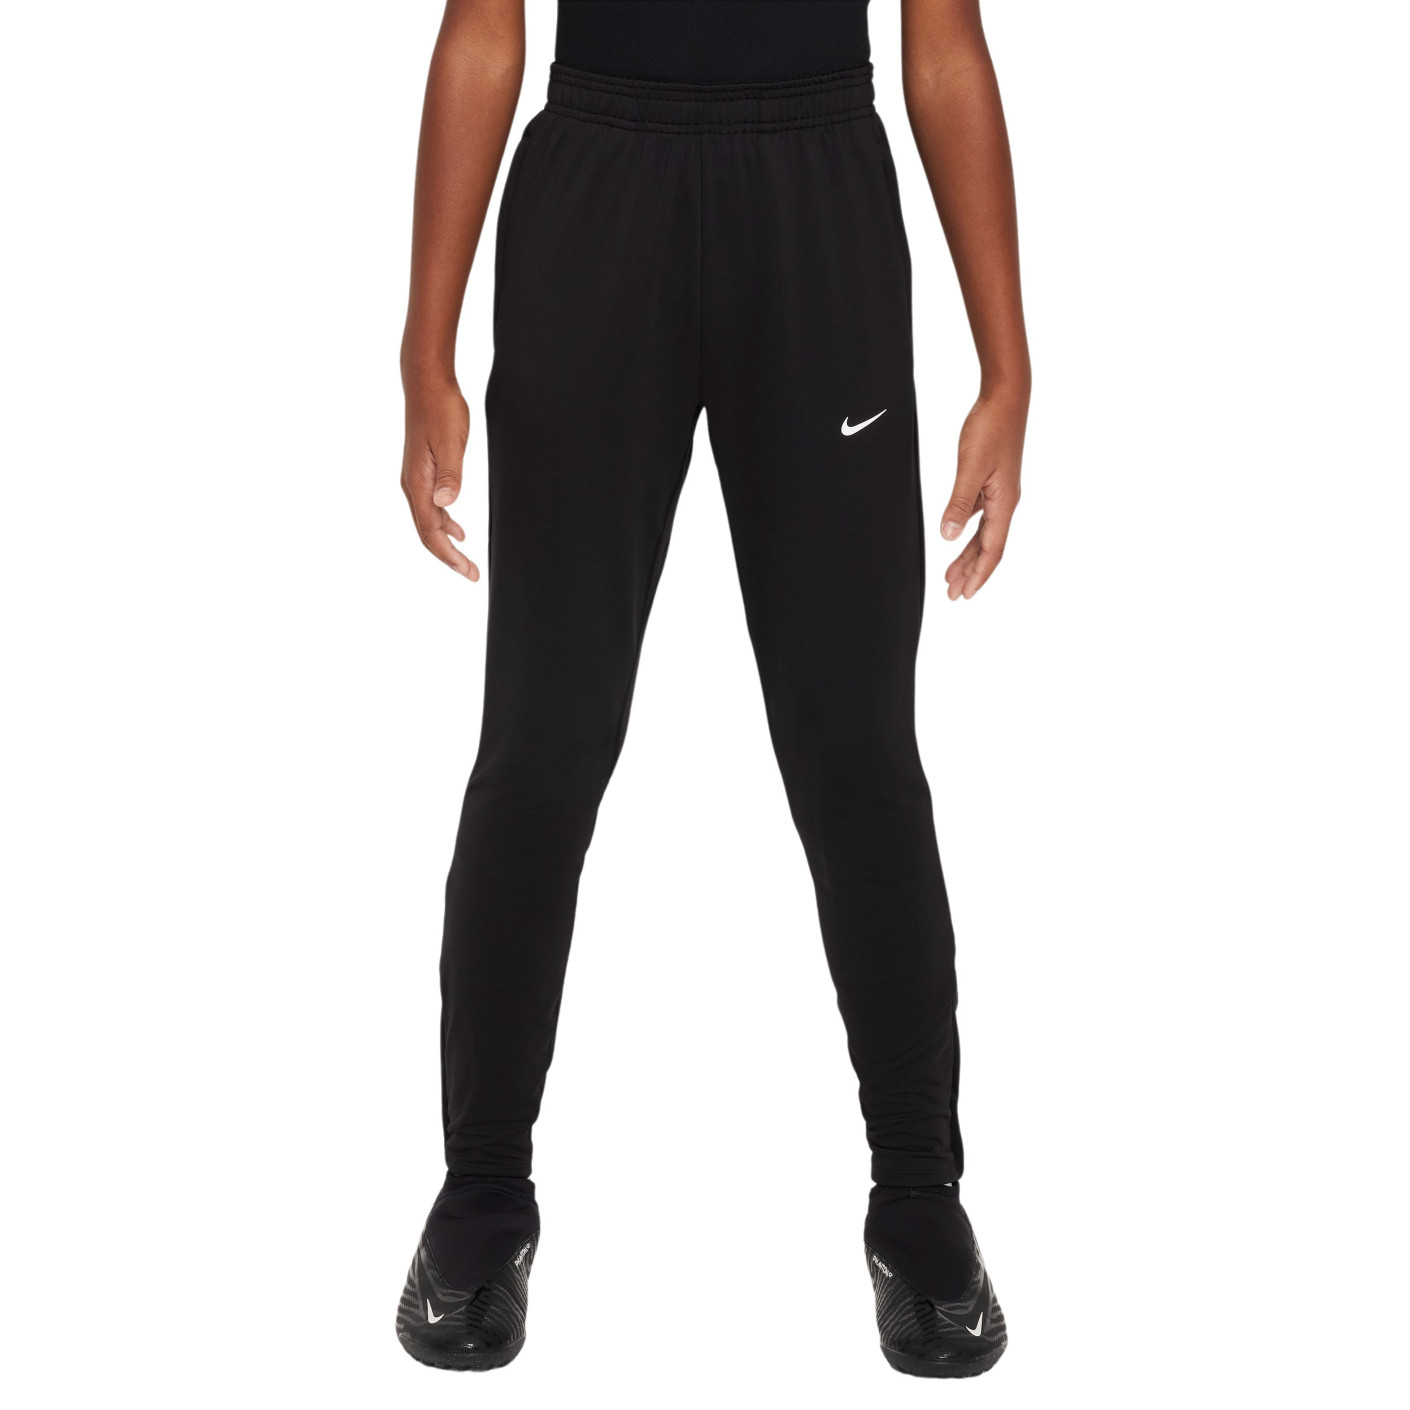 Pantalon d'entraînement Nike Strike pour enfants, noir, gris foncé, blanc